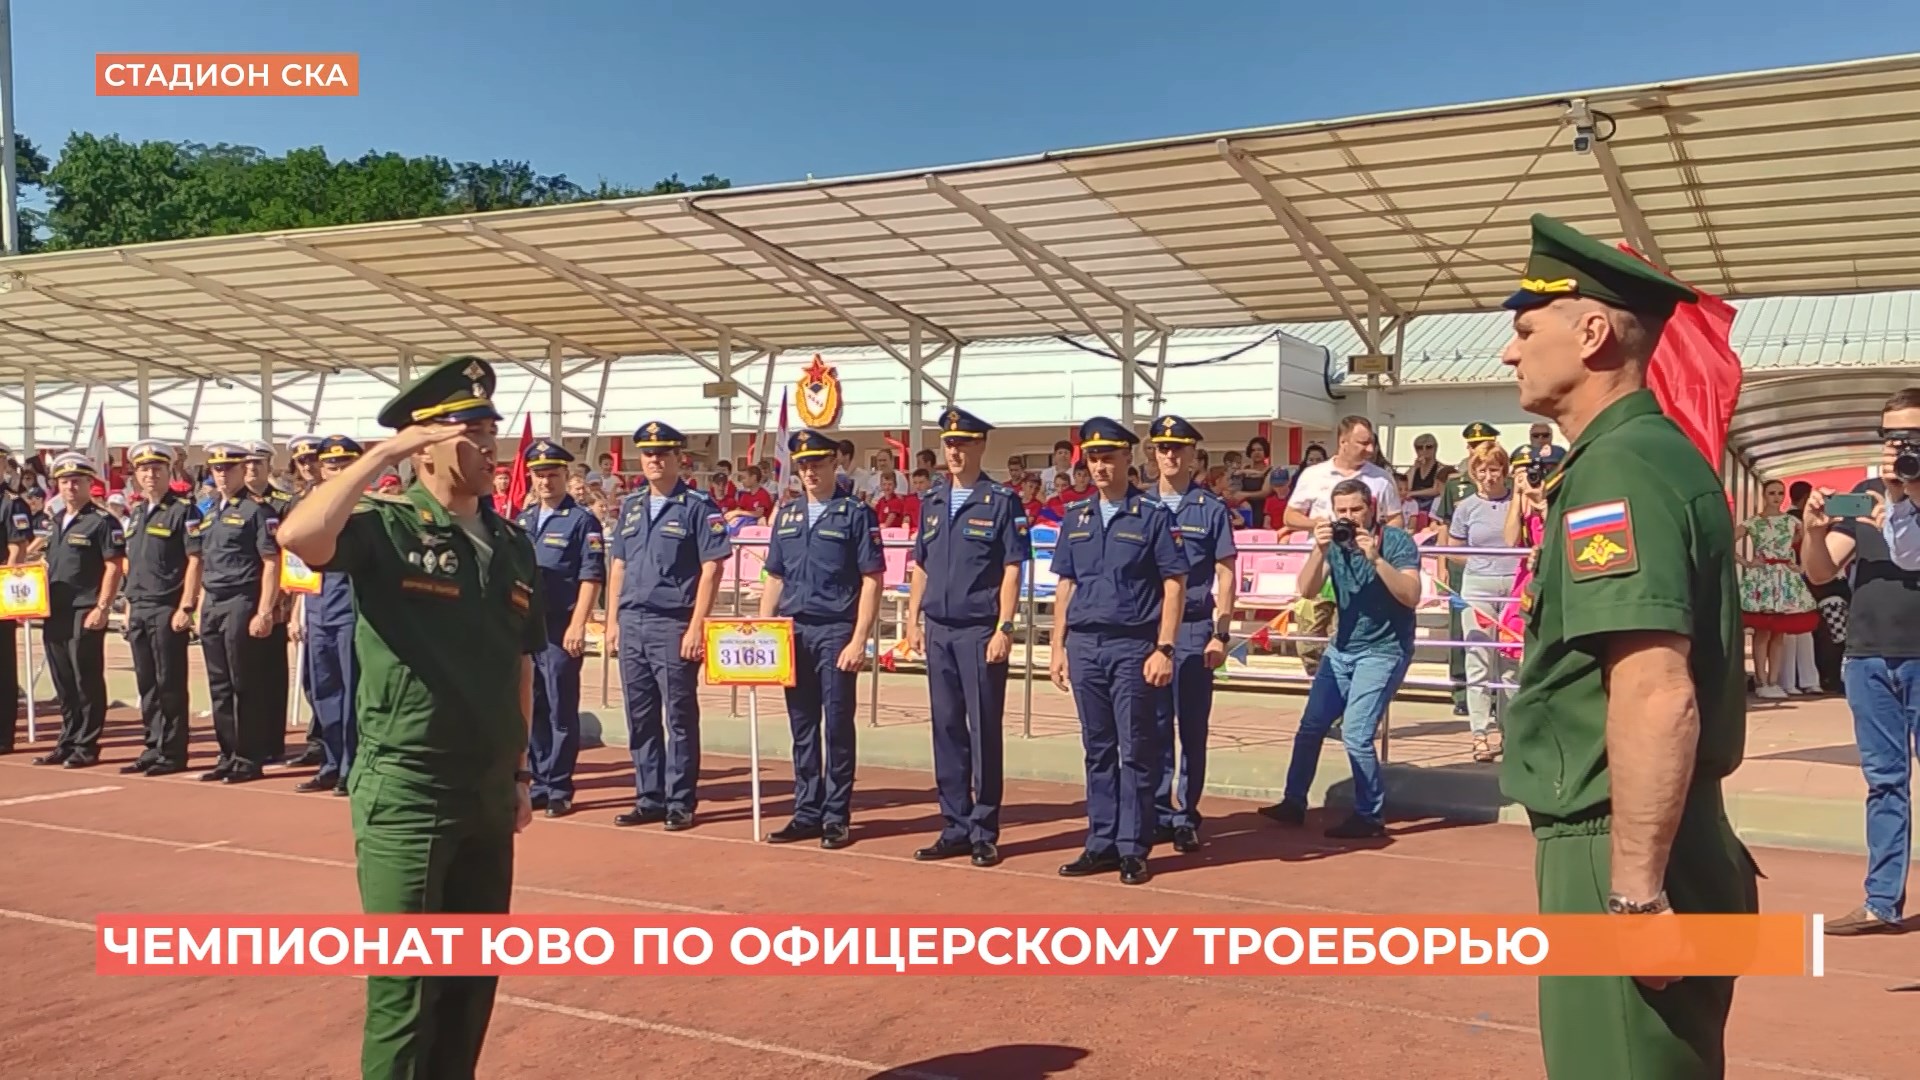 Чемпионат ЮВО по офицерскому троеборью прошел в Ростове